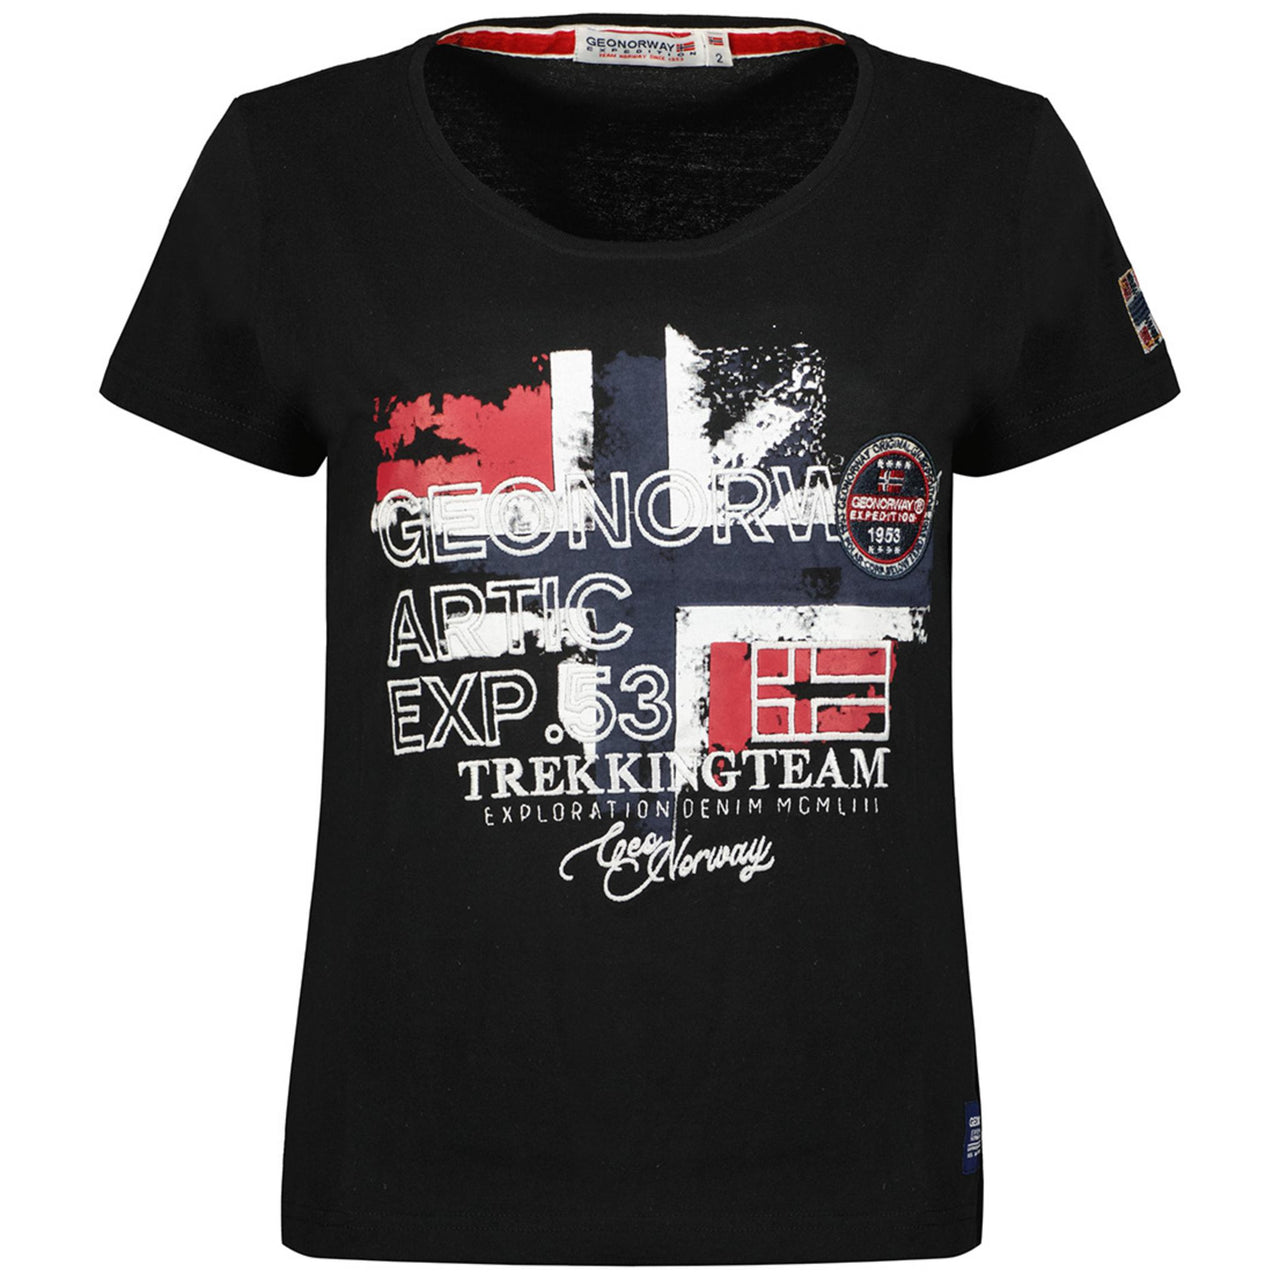 Geographical Norway Jarry Femme - T-shirt manches courtes avec impressions sur la poitrine, un choix tendance et confortable pour toutes les occasions.